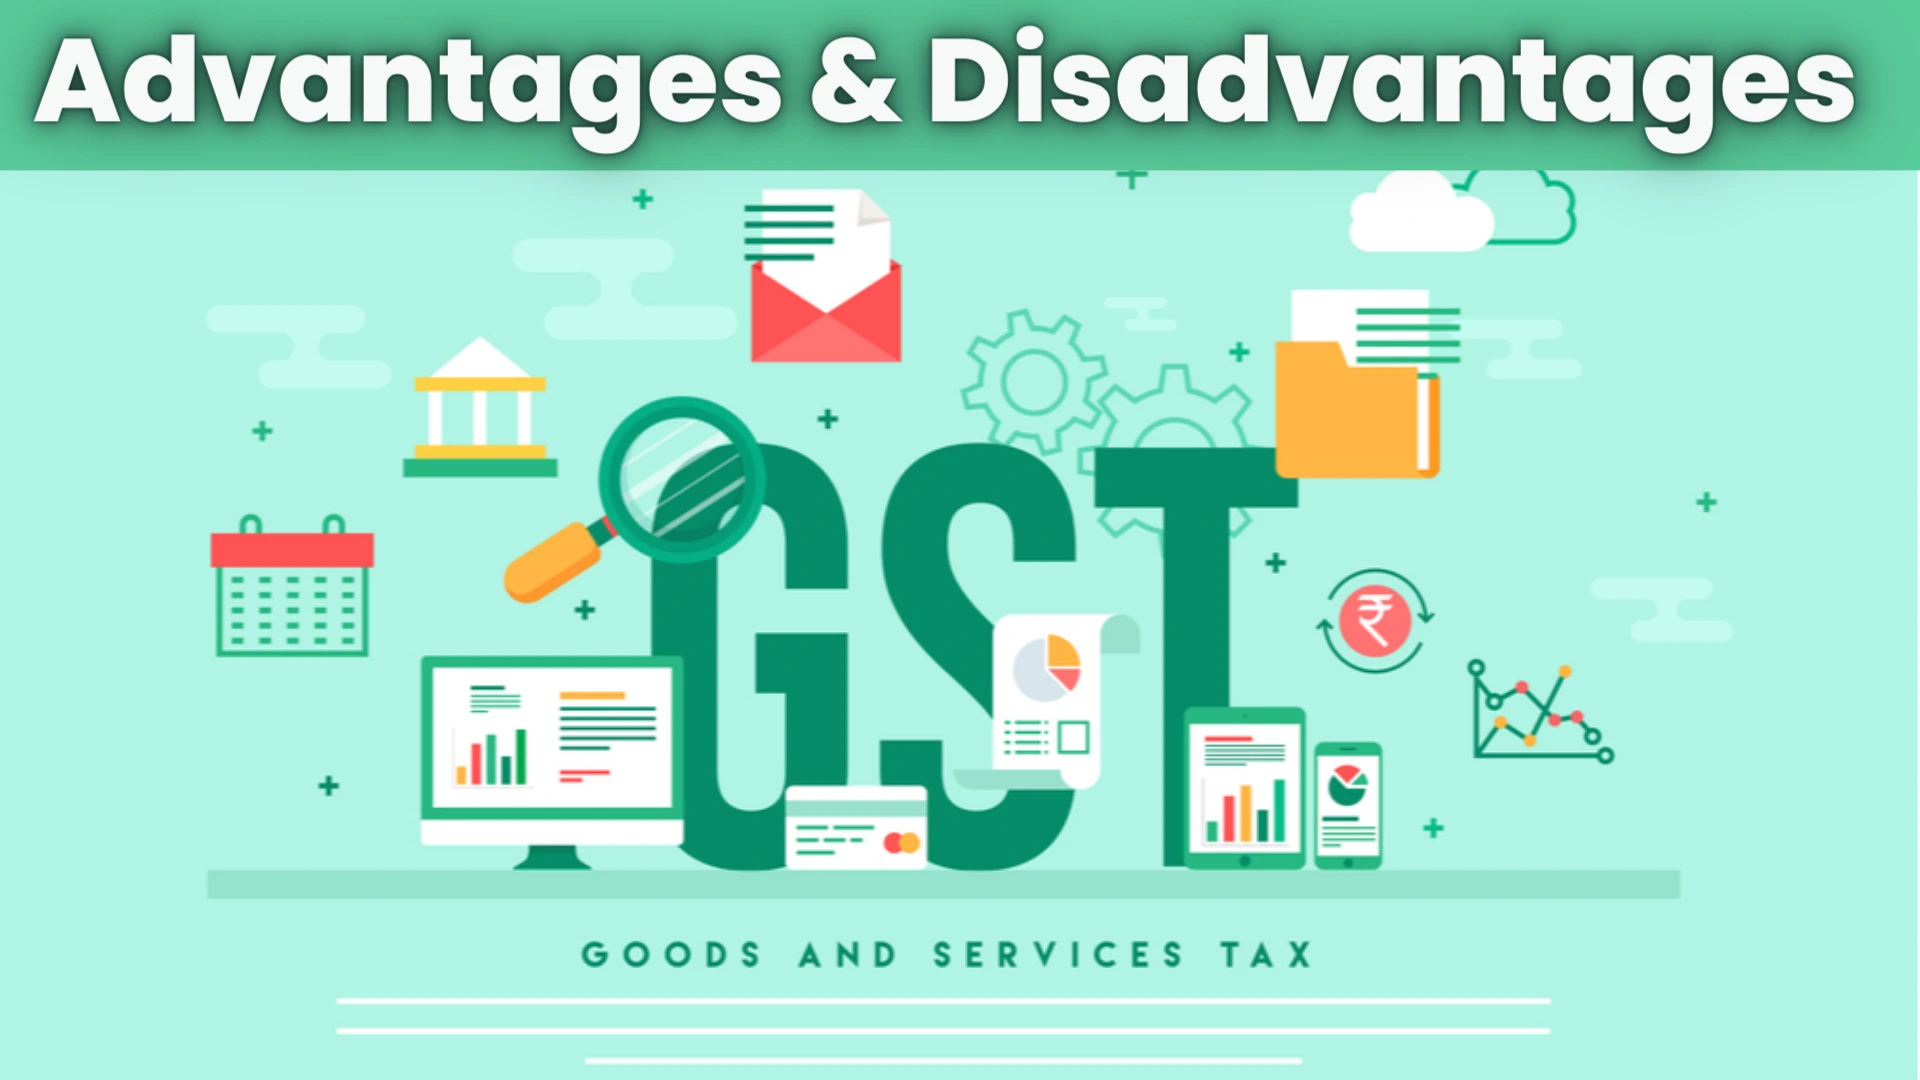 Advantages & Disadvantages GST - Benefits